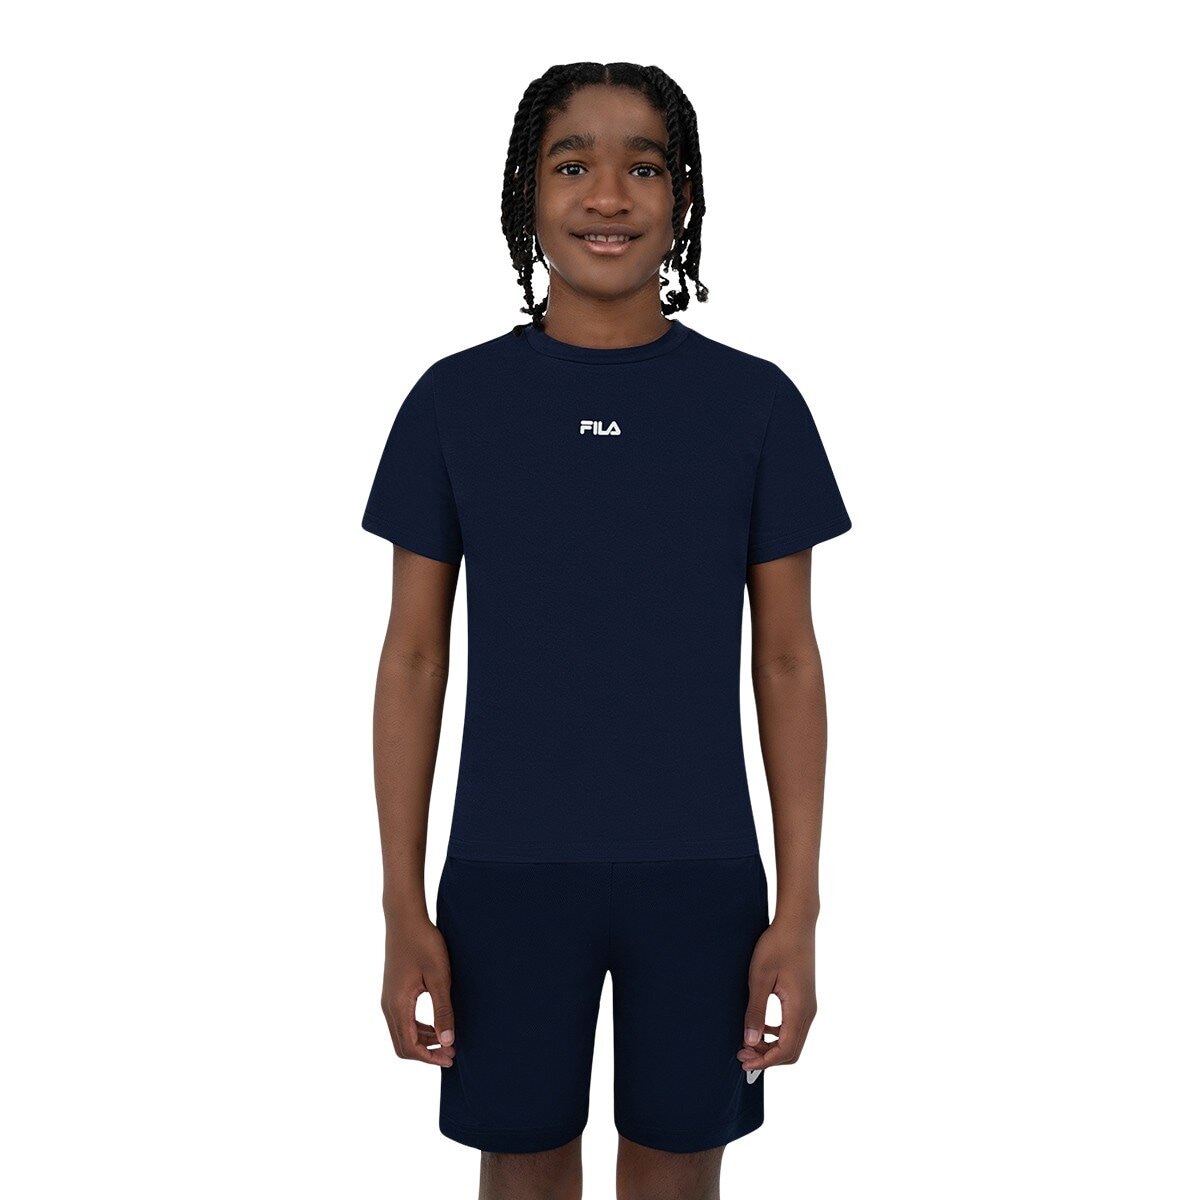 Fila 兒童短袖運動服飾三件組 藍色組